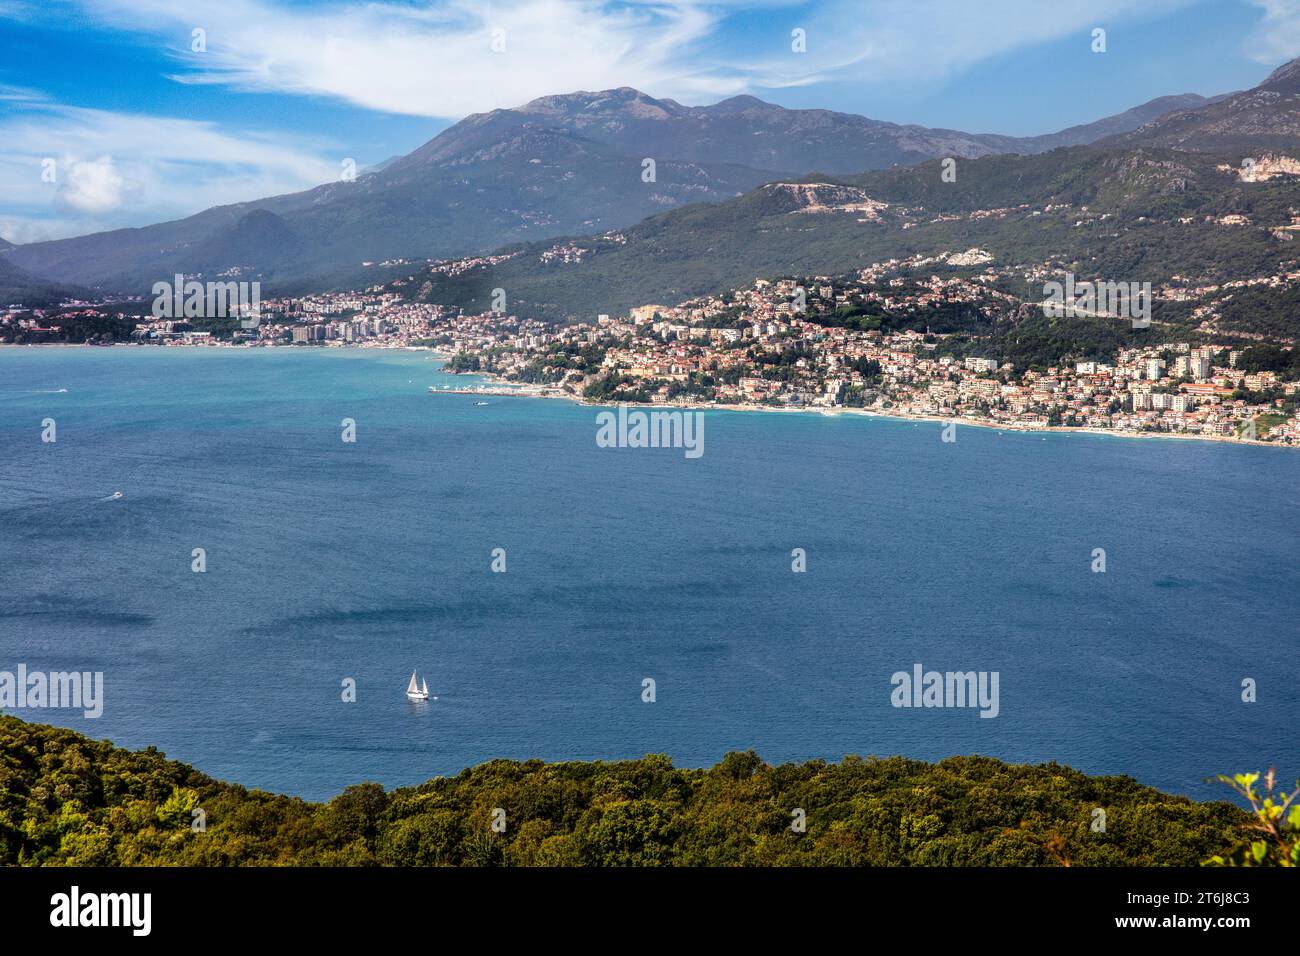 Die bergige und buchtreiche Halbinsel Lustica liegt vor der fjordartigen Bucht von Kotor in der Adria, Montenegro, Lustica, Montenegro Stockfoto